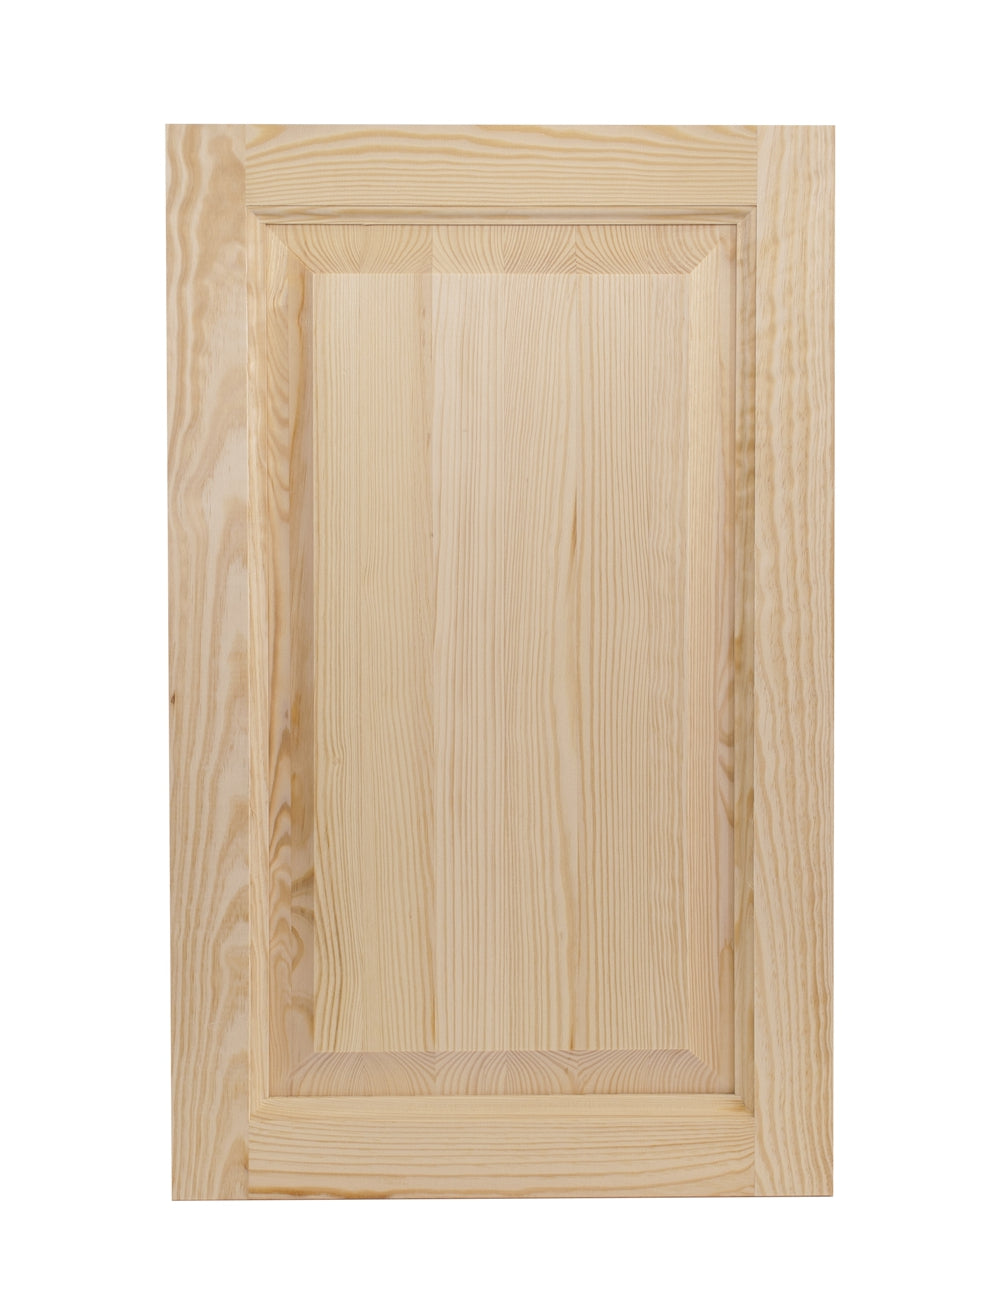 Ante bugnate in legno massello per mobili – Legnozone